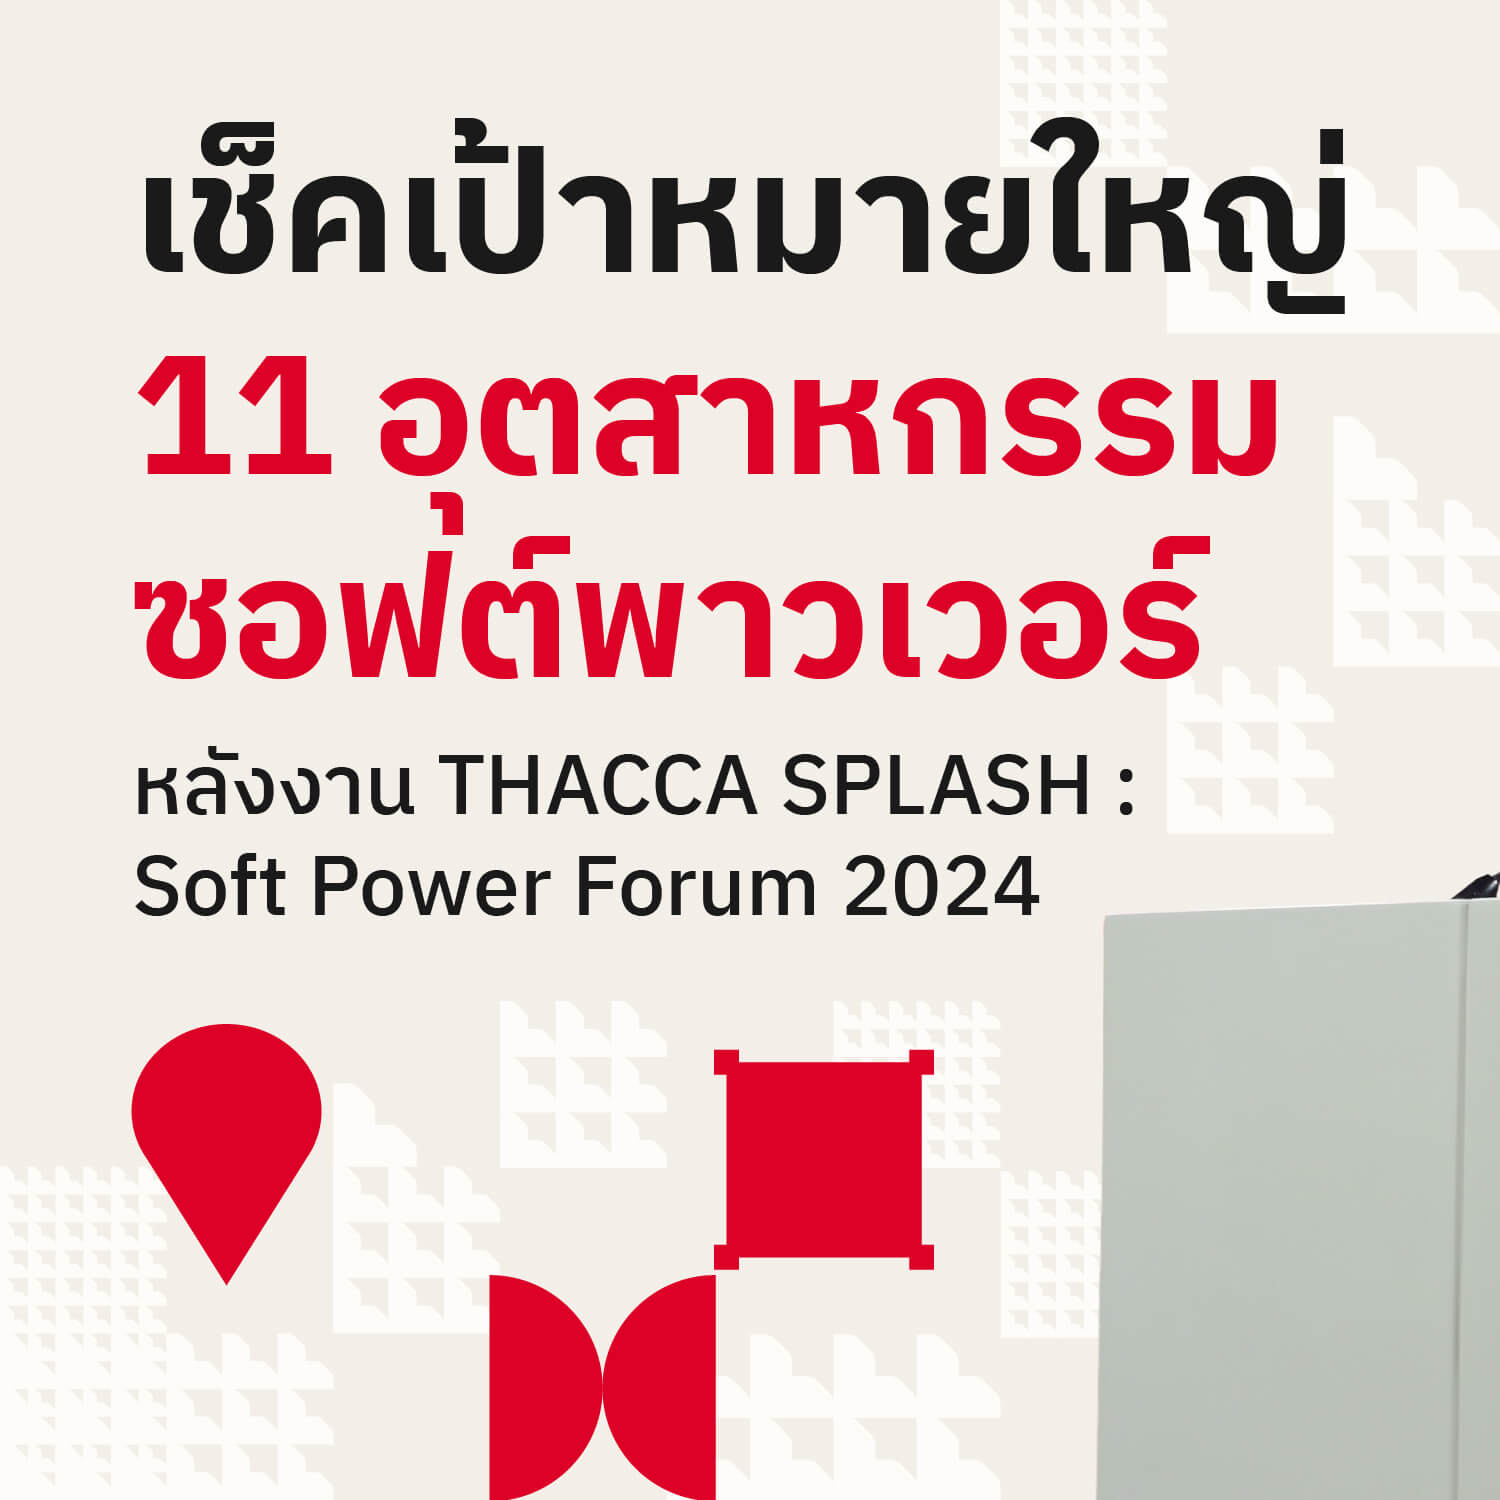 📌 THACCA ขอเชิญชวนทุกคนมาร่วมกันเช็คเป้าหมายใหญ่ 11 อุตสาหกรรมซอฟต์พาวเวอร์หลังงาน THACCA SPLASH : Soft Power Forum 2024